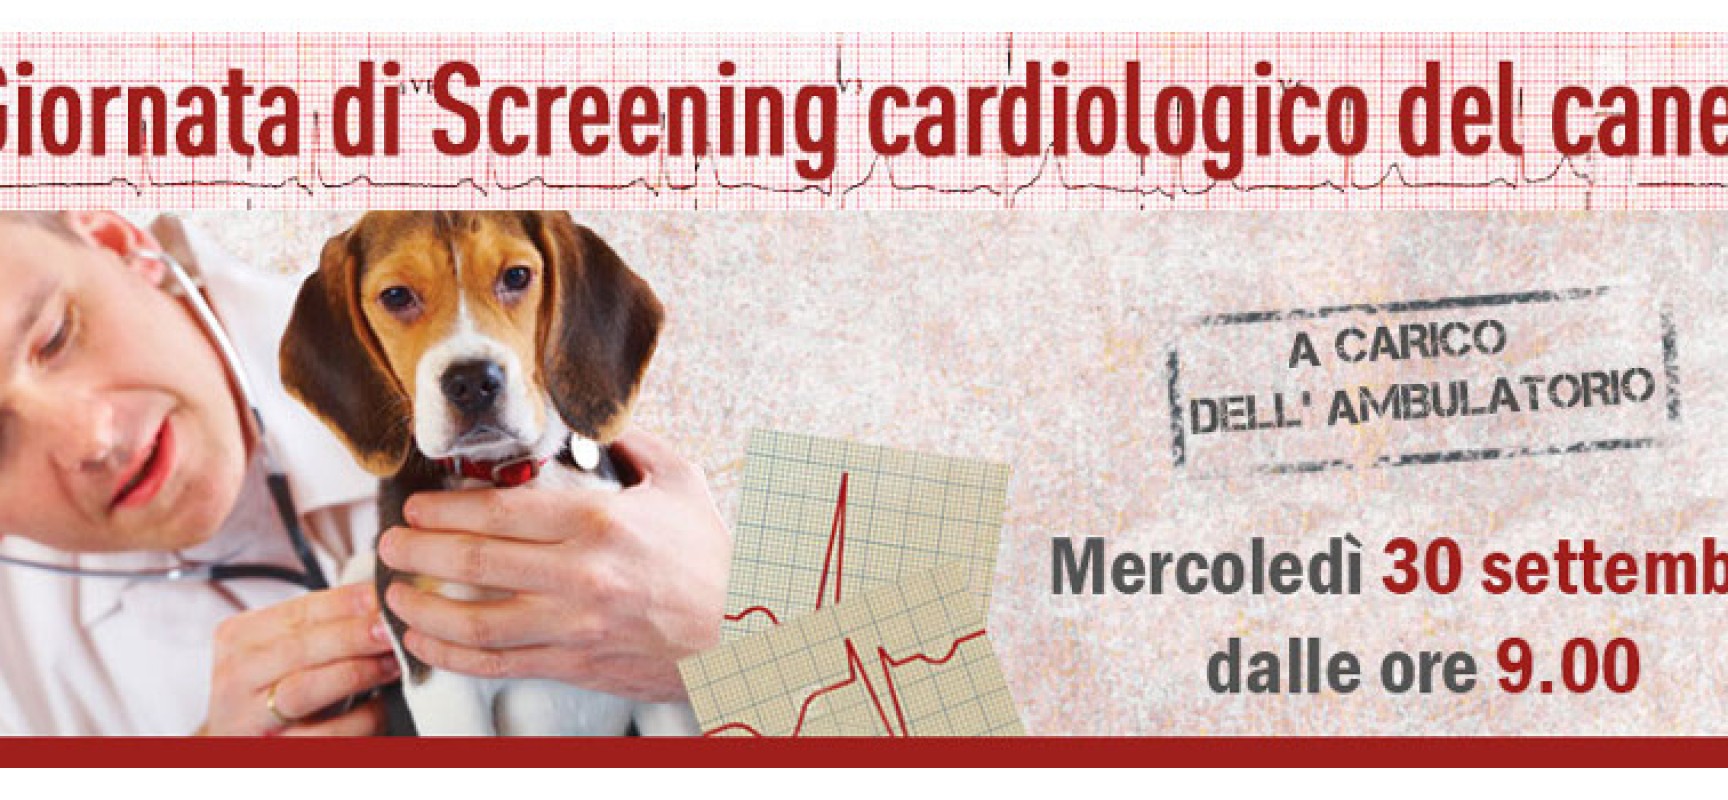 L’ambulatorio Papagni promuove a sue spese la giornata dello screening cardiologico del cane